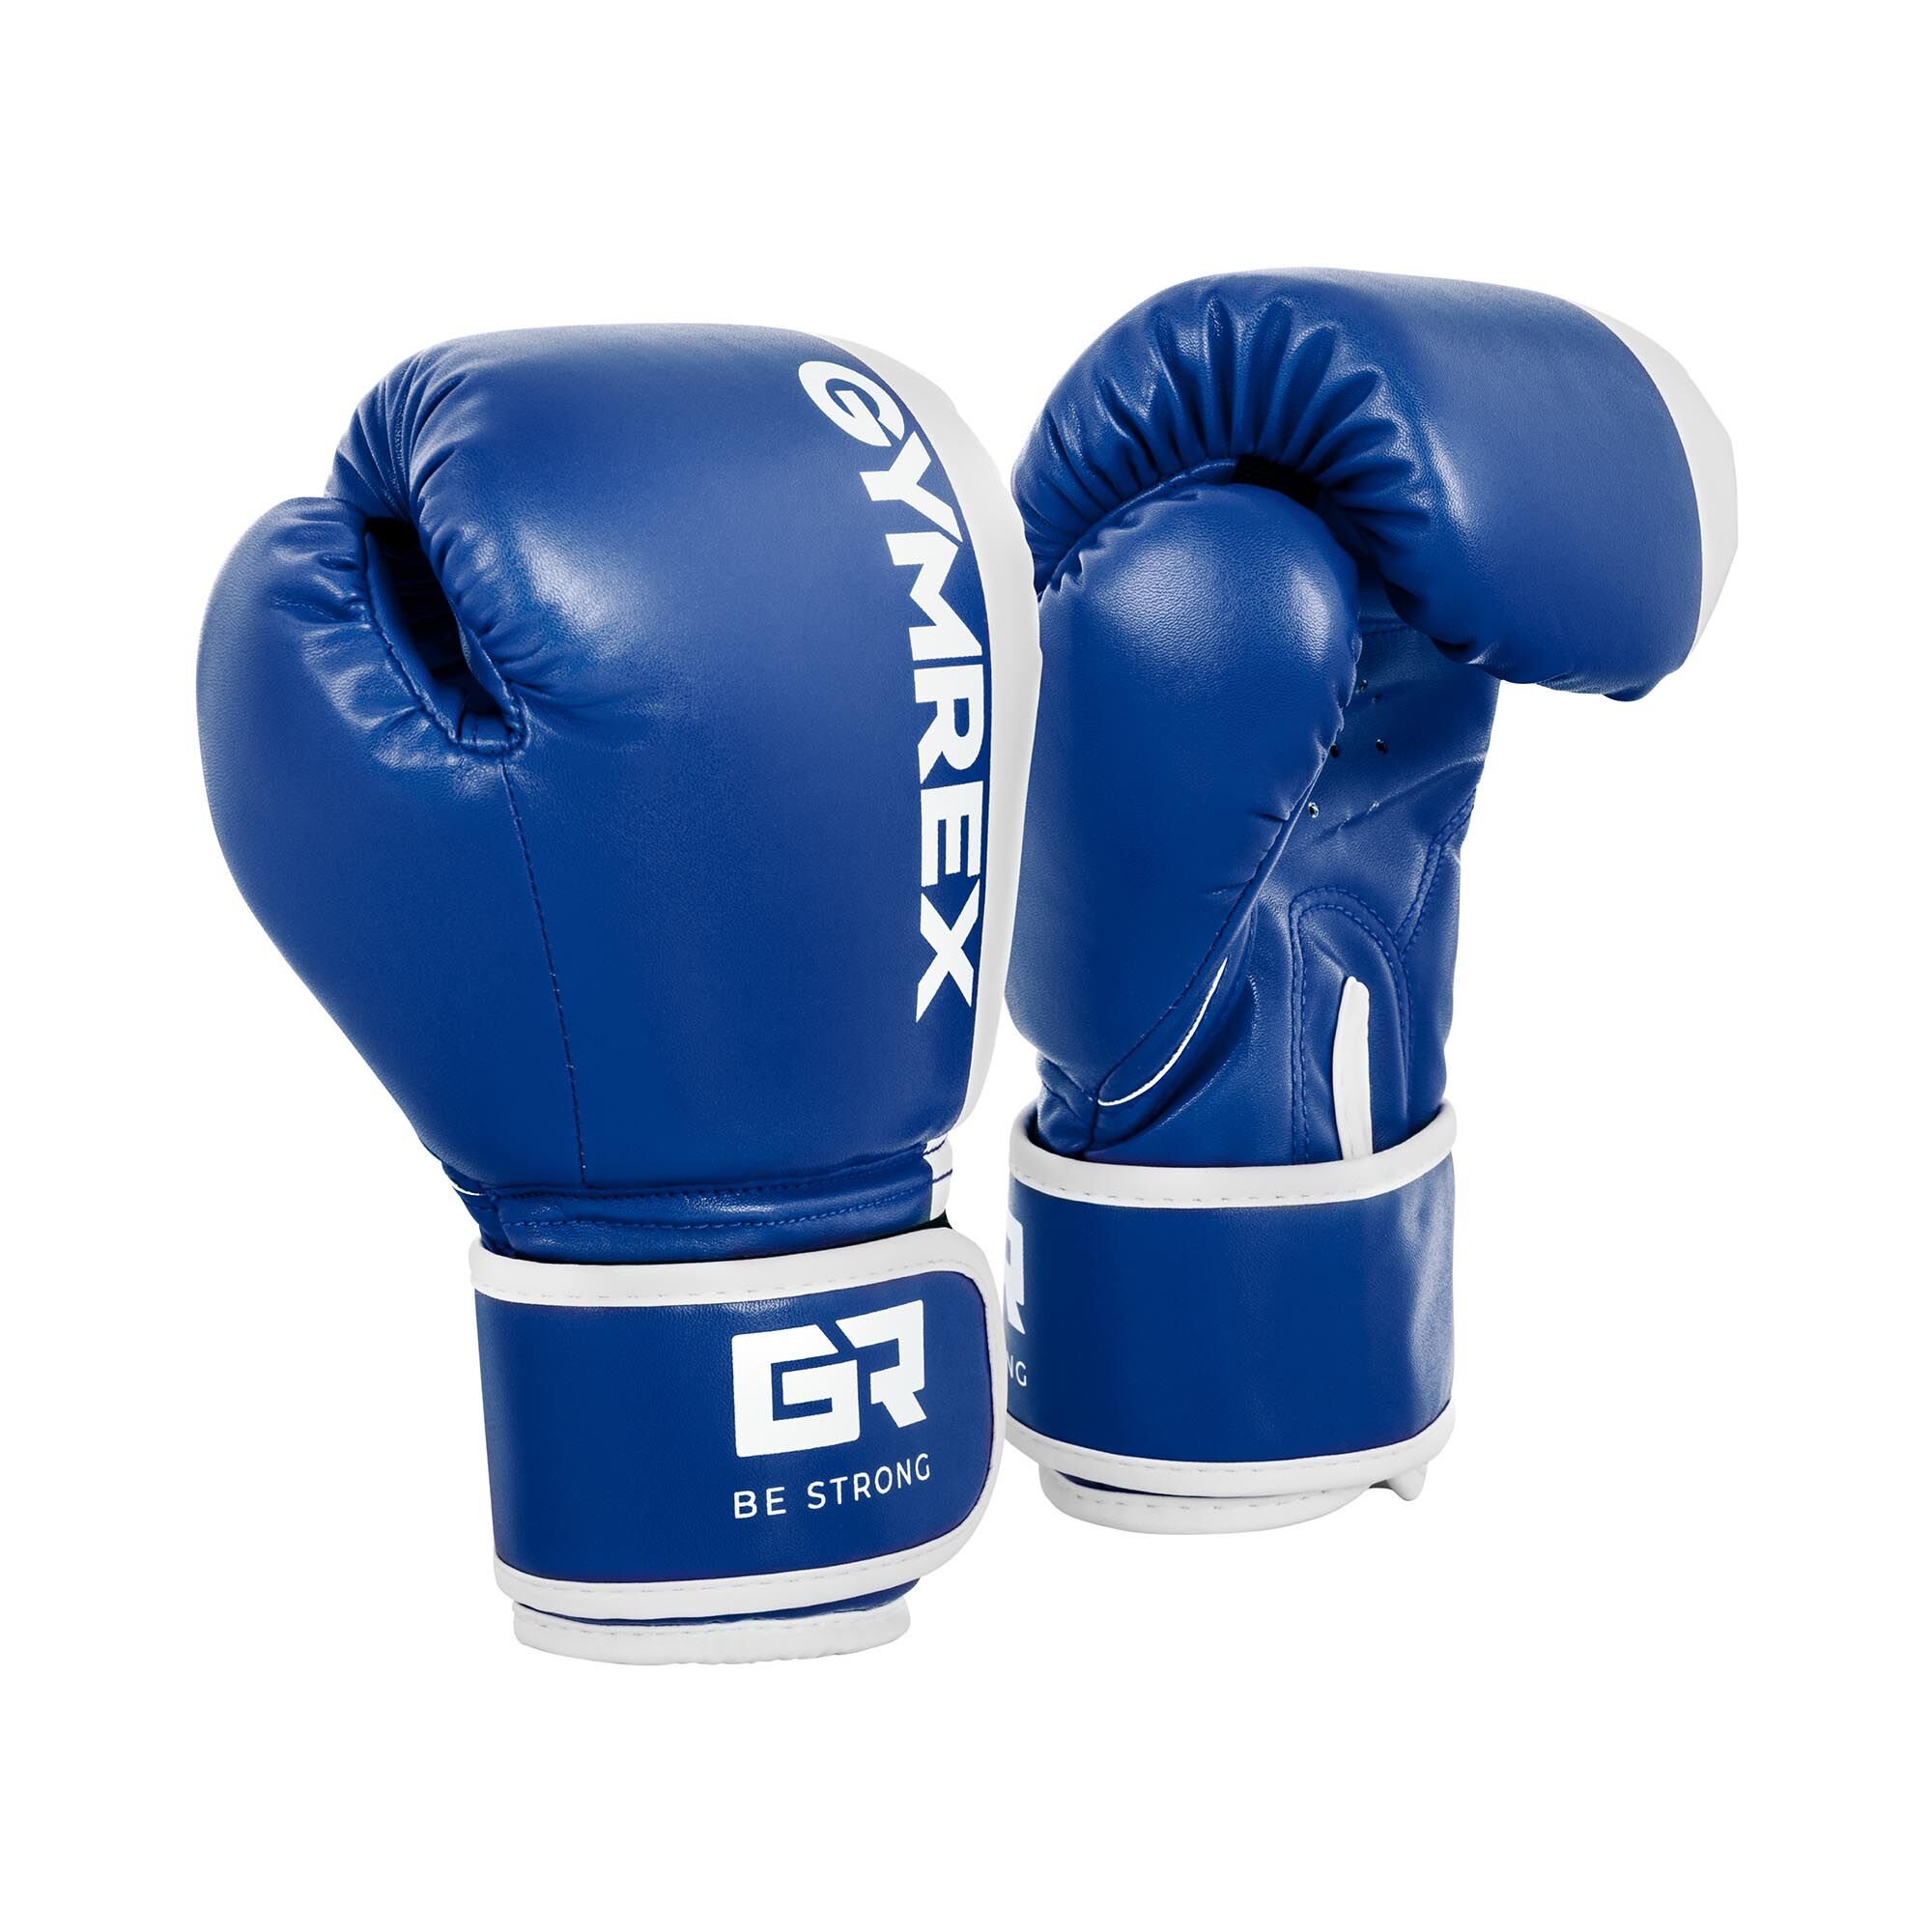 Gymrex Rękawice bokserskie dla dzieci - biało-niebieskie - 6 oz GR-BG 6P